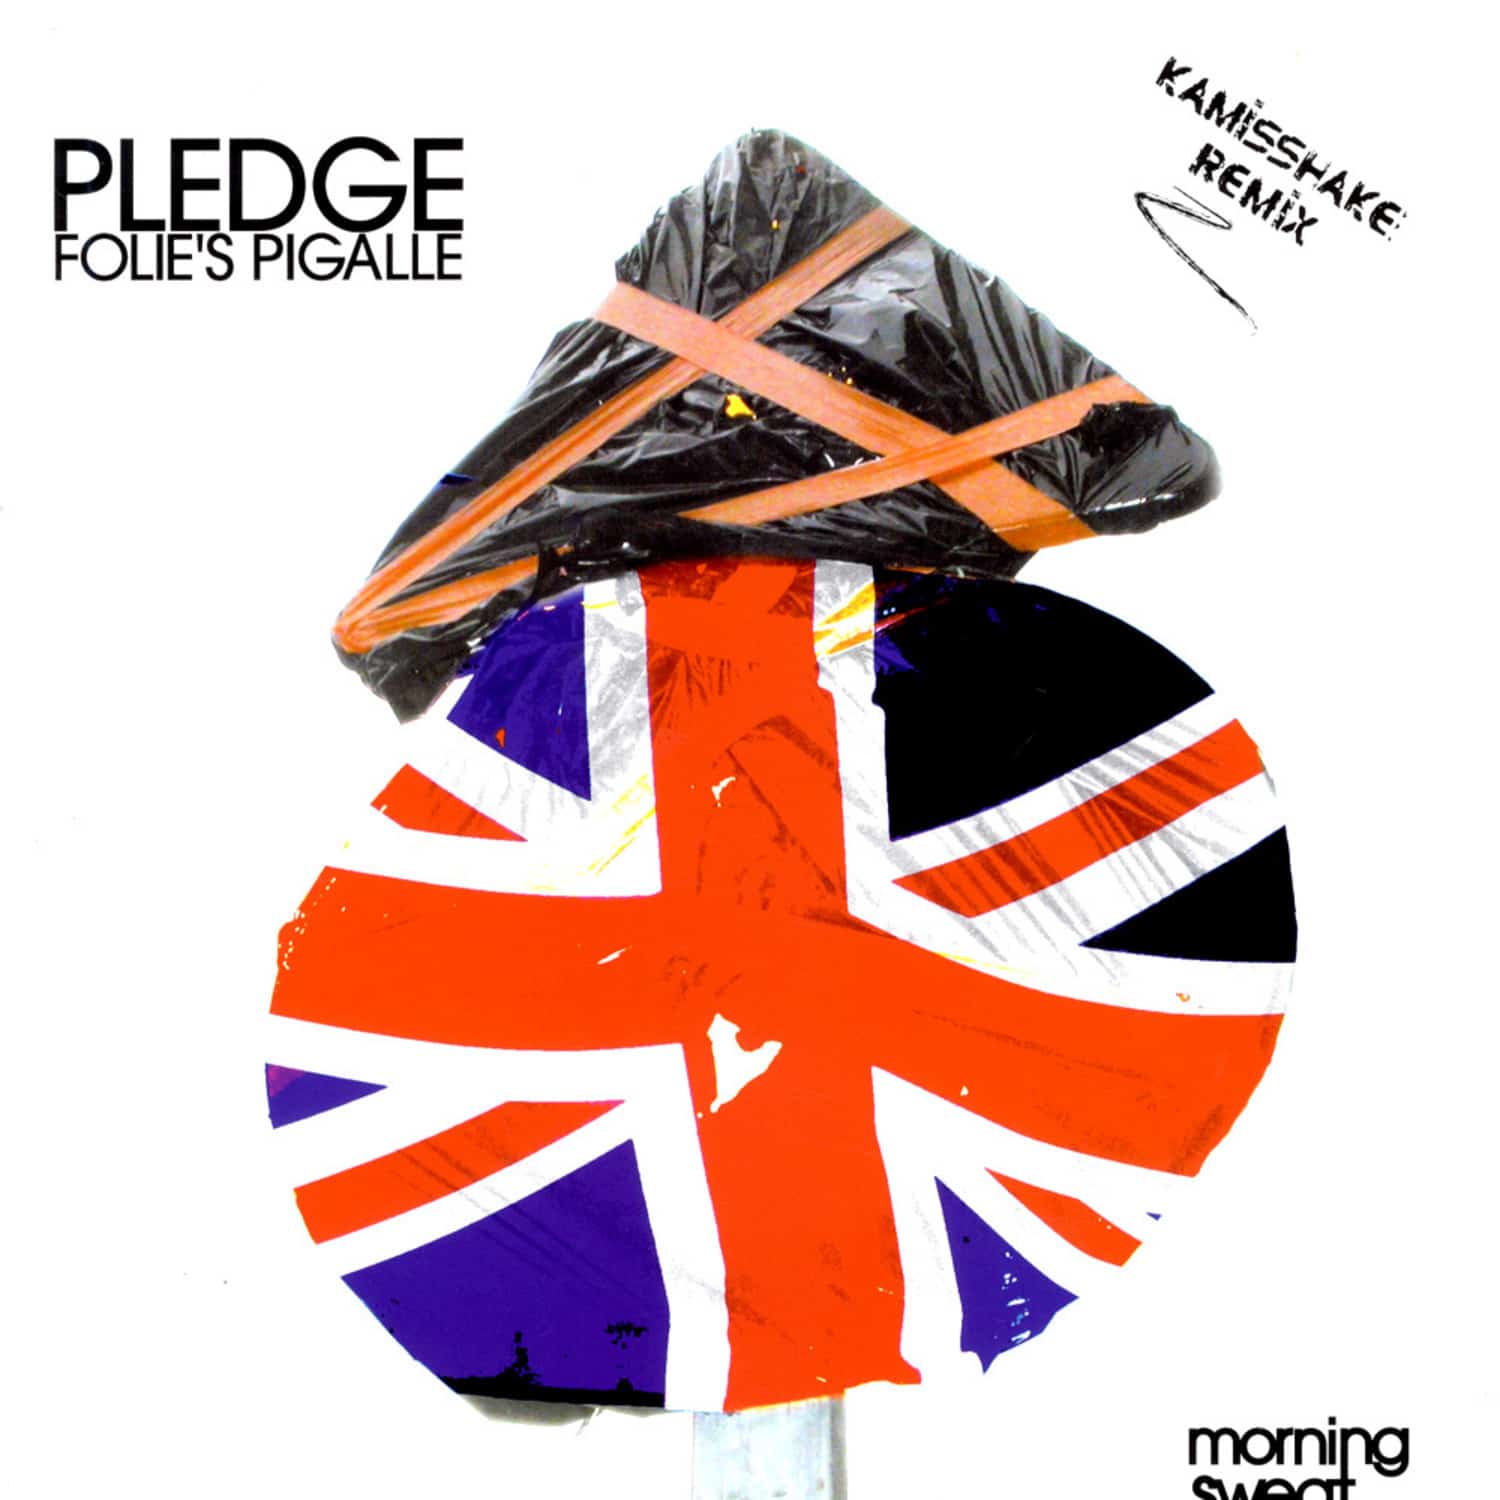 Pledge - FOLIES PIGALLE